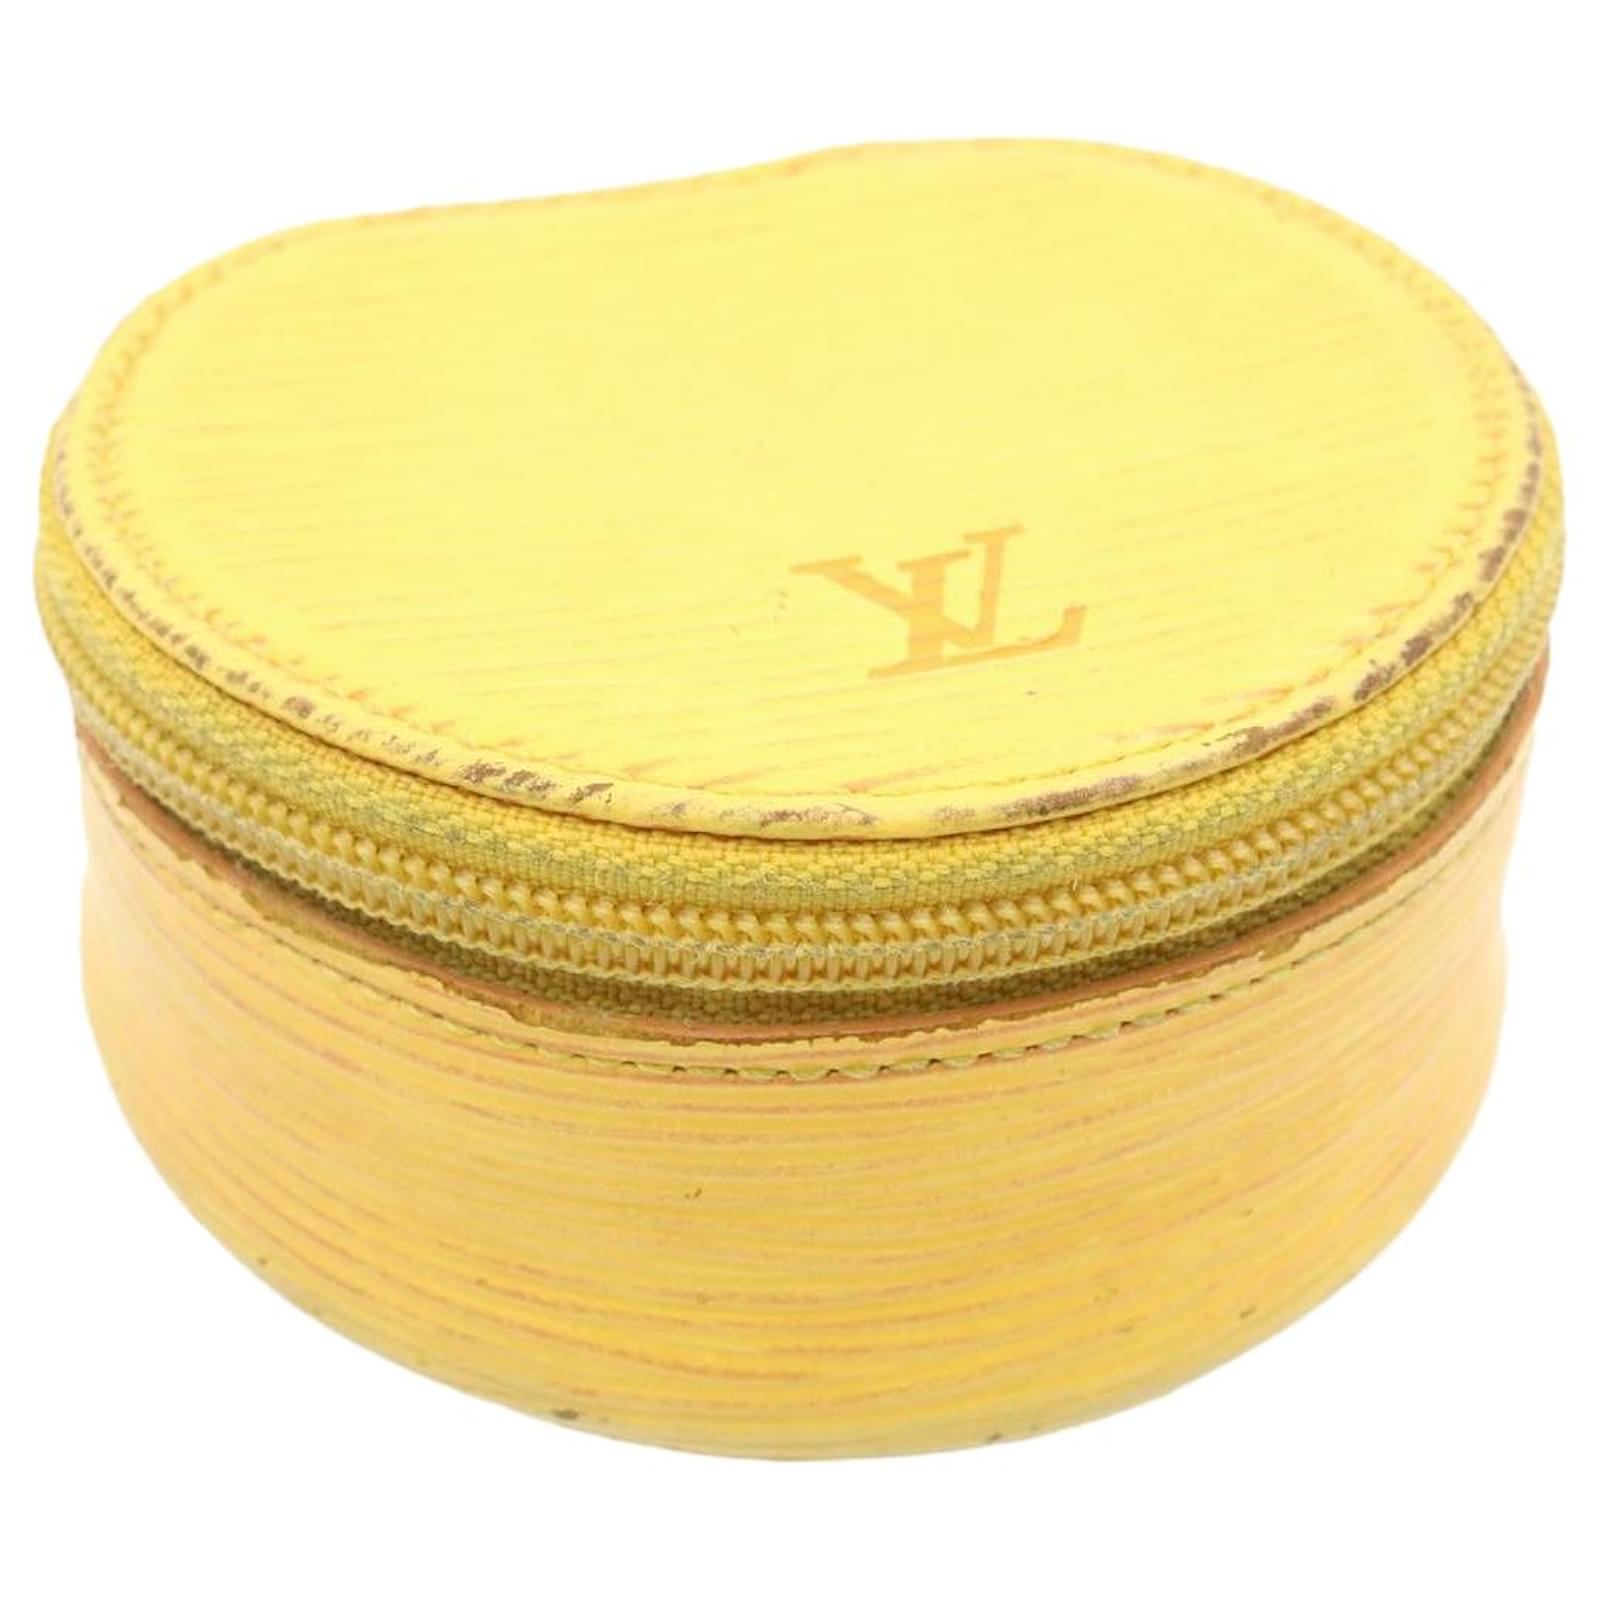 Louis Vuitton raro joyero de cuero Epi amarillo